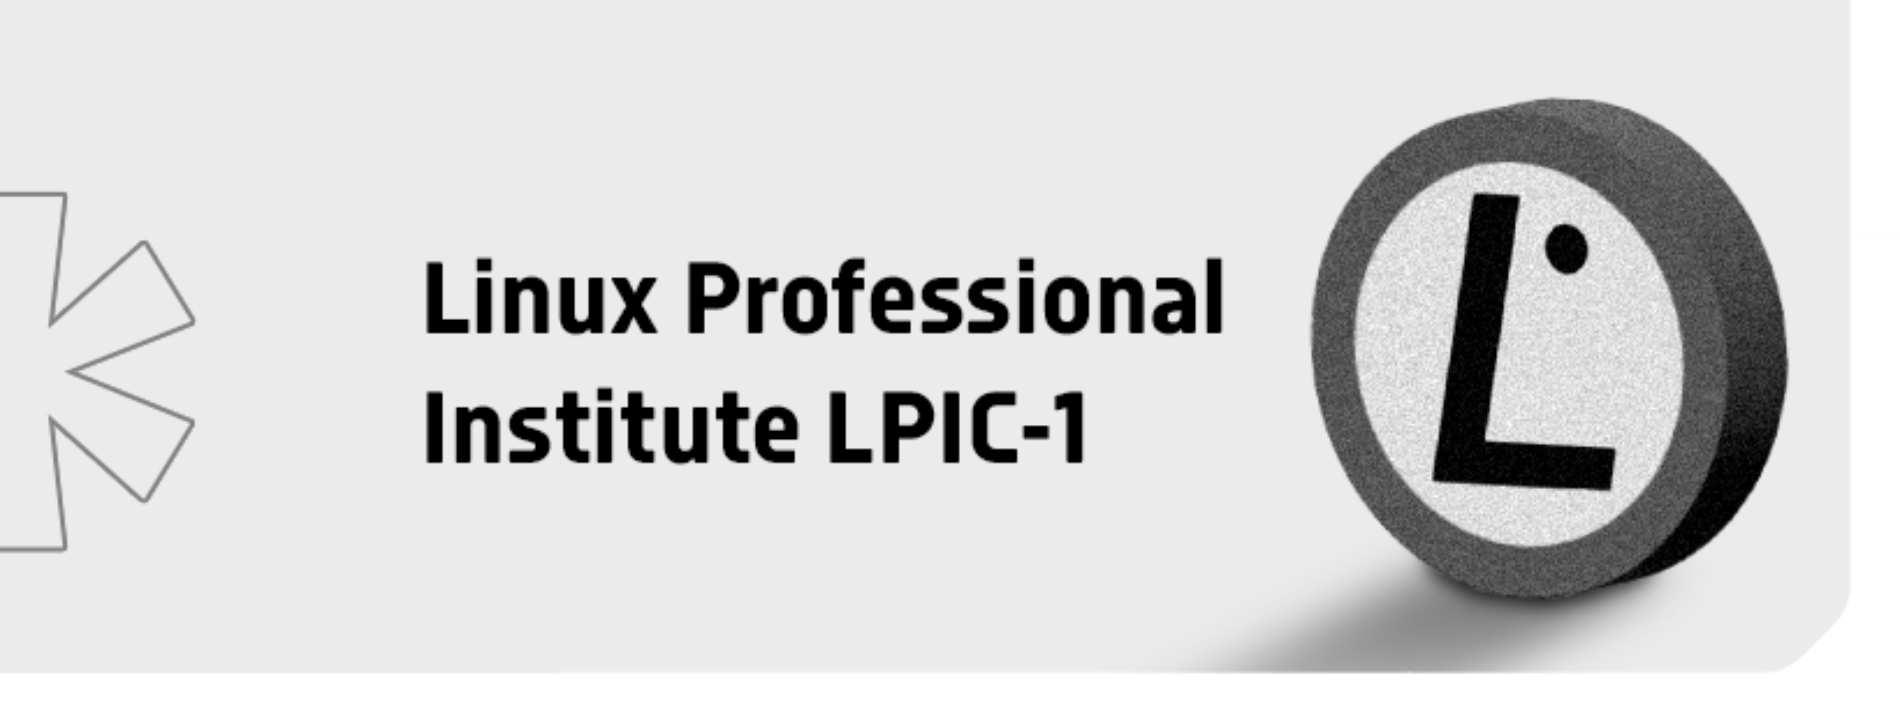 Prepare-se para a Certificação LPIC-1 com o Treinamento 4Linux